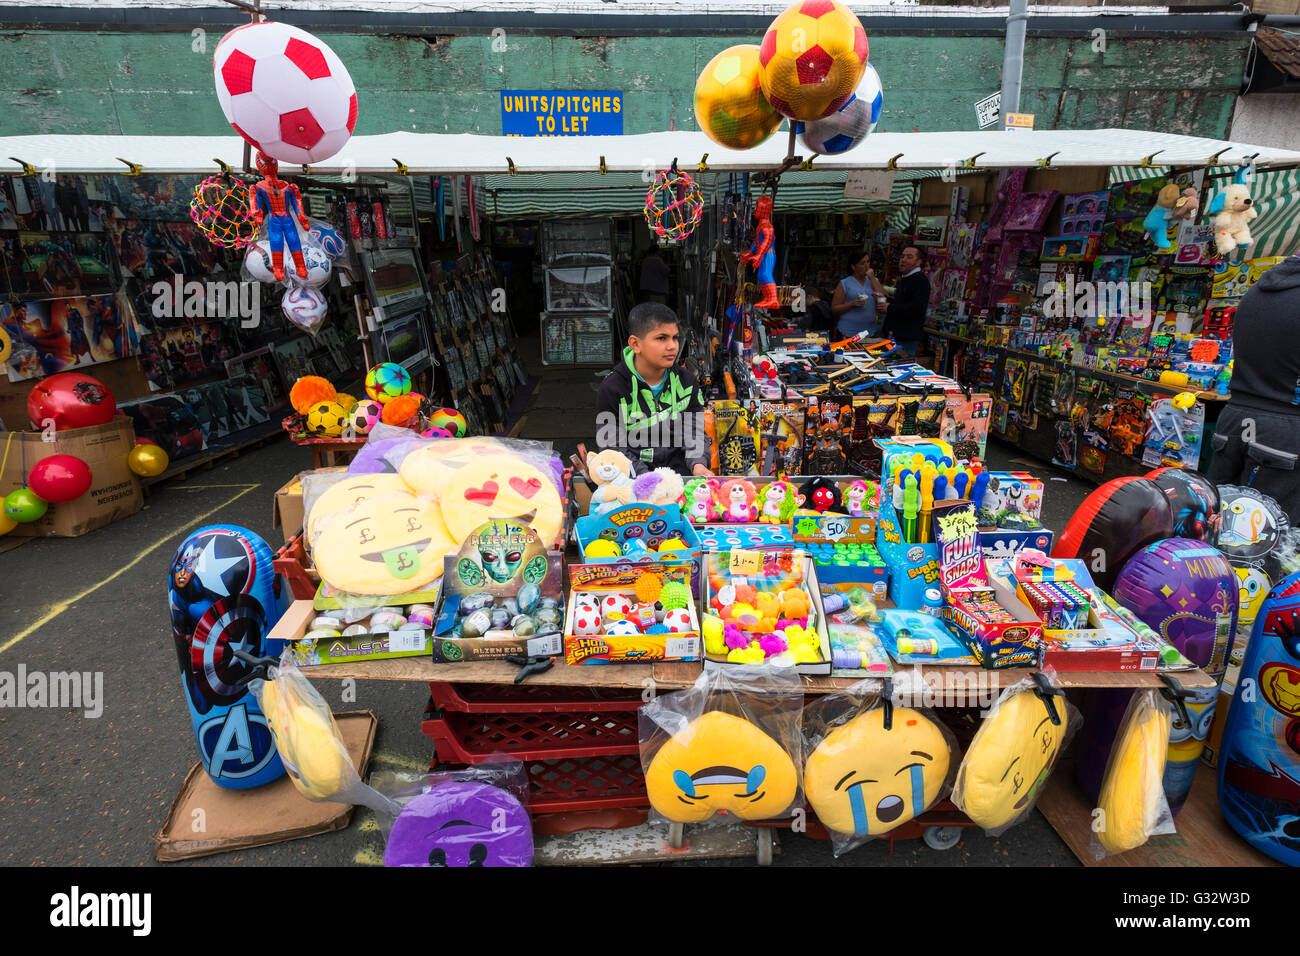 Bloquer la vente de jouets à bas prix à Barras en marché Gallowgate Glasgow, Royaume-Uni Banque D'Images